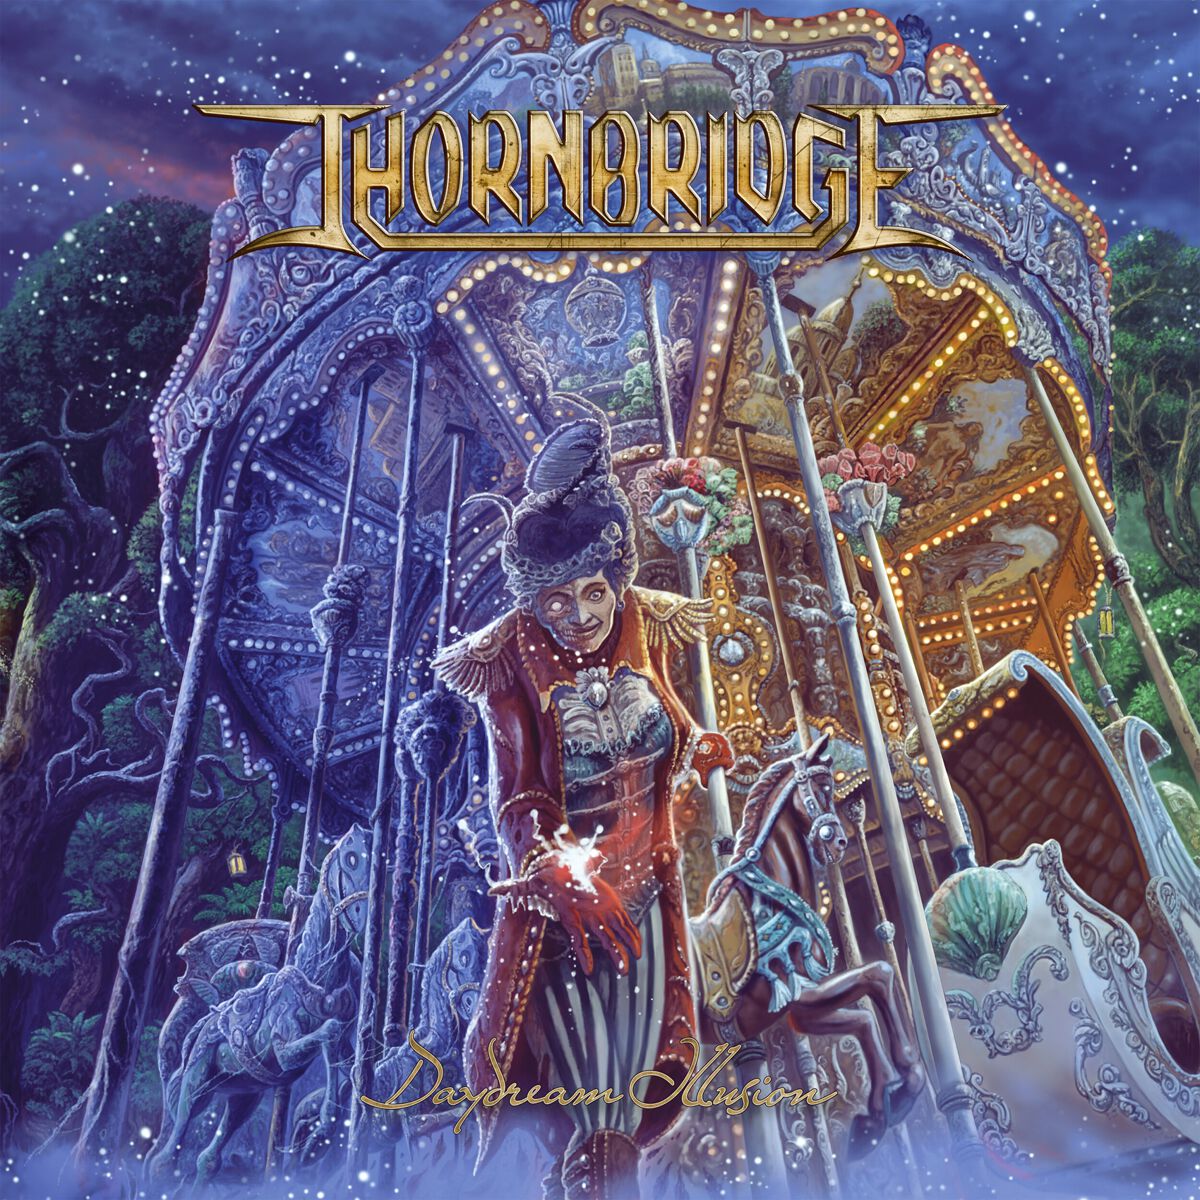 Thornbridge Daydream Illusion CD multicolor